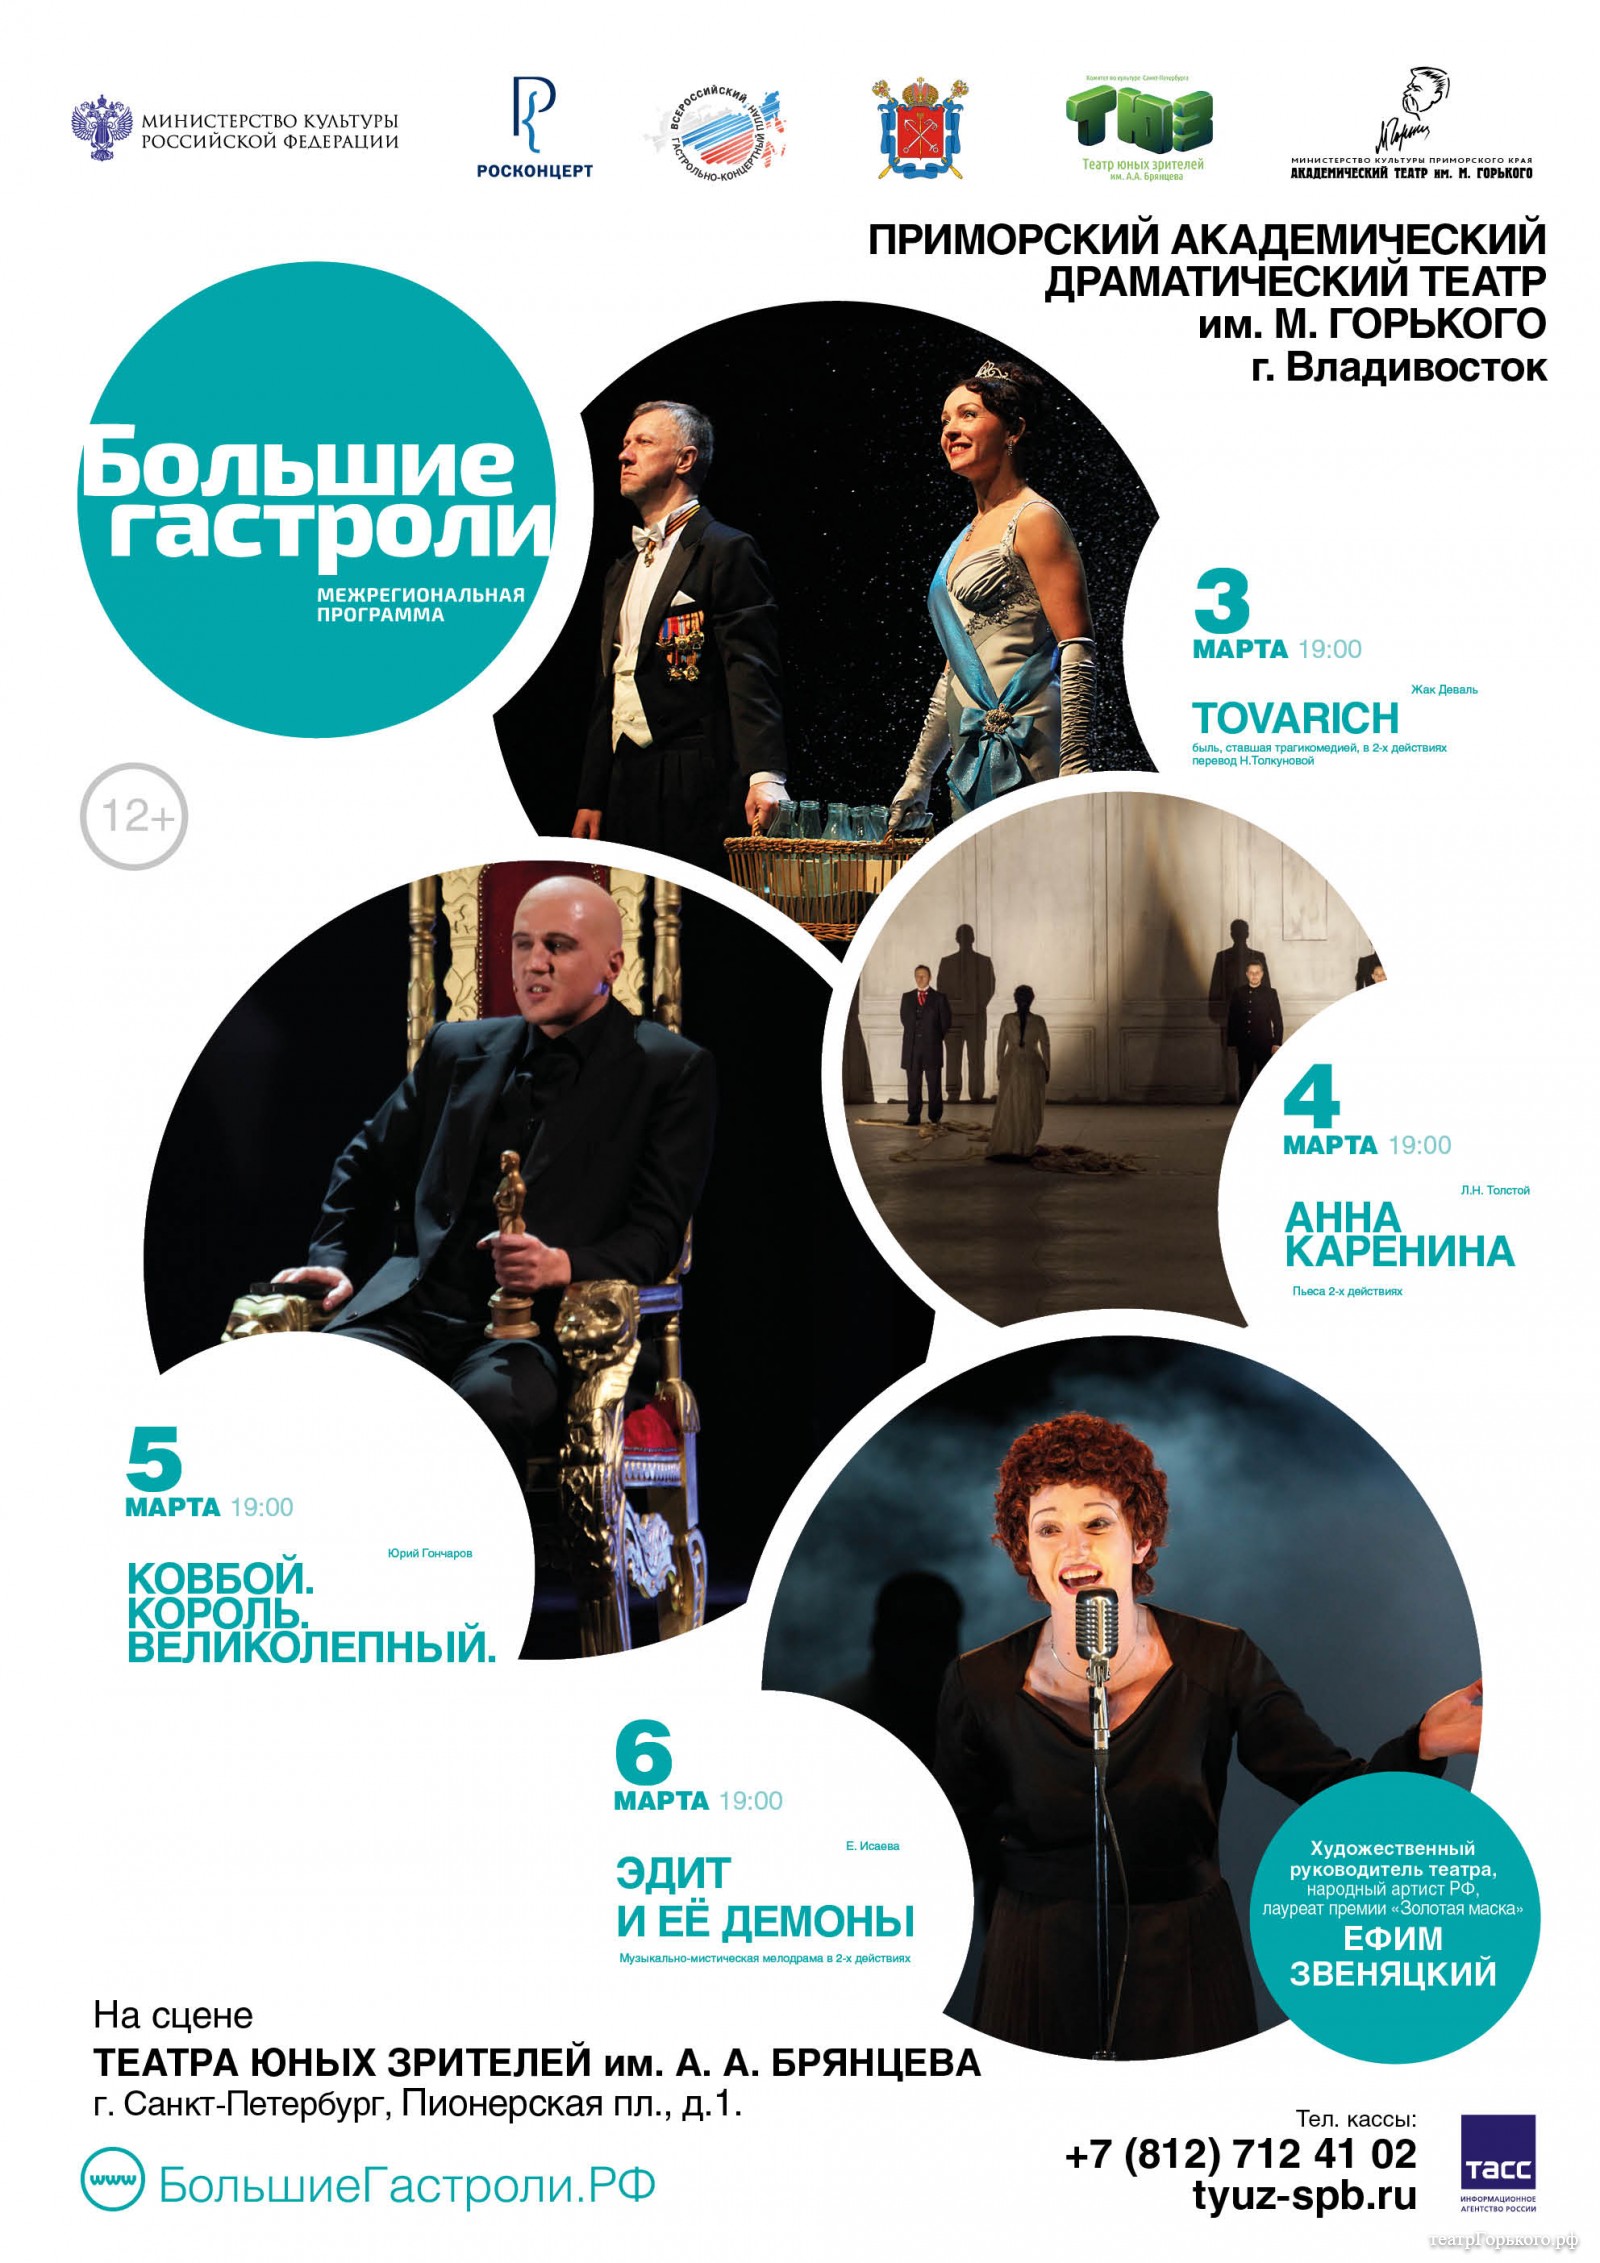 Театр им. М. Горького отправляется на гастроли в Санкт-Петербург с 3-6 марта и 8-9 марта Тула!